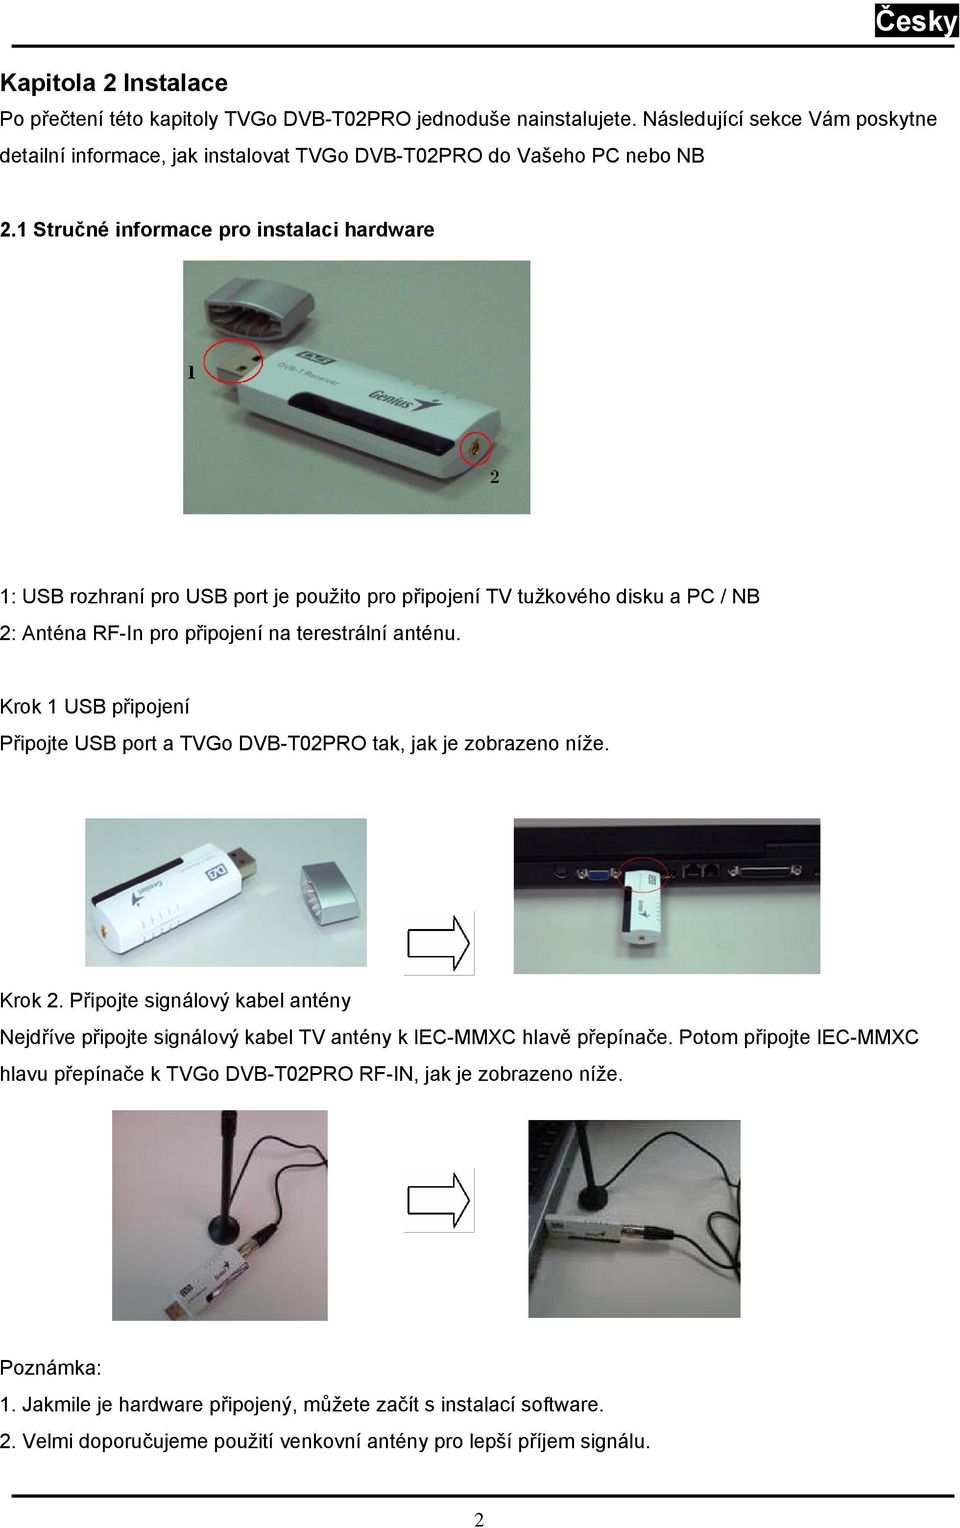 Krok 1 USB připojení Připojte USB port a TVGo DVB-T02PRO tak, jak je zobrazeno níže. Krok 2. Připojte signálový kabel antény Nejdříve připojte signálový kabel TV antény k IEC-MMXC hlavě přepínače.